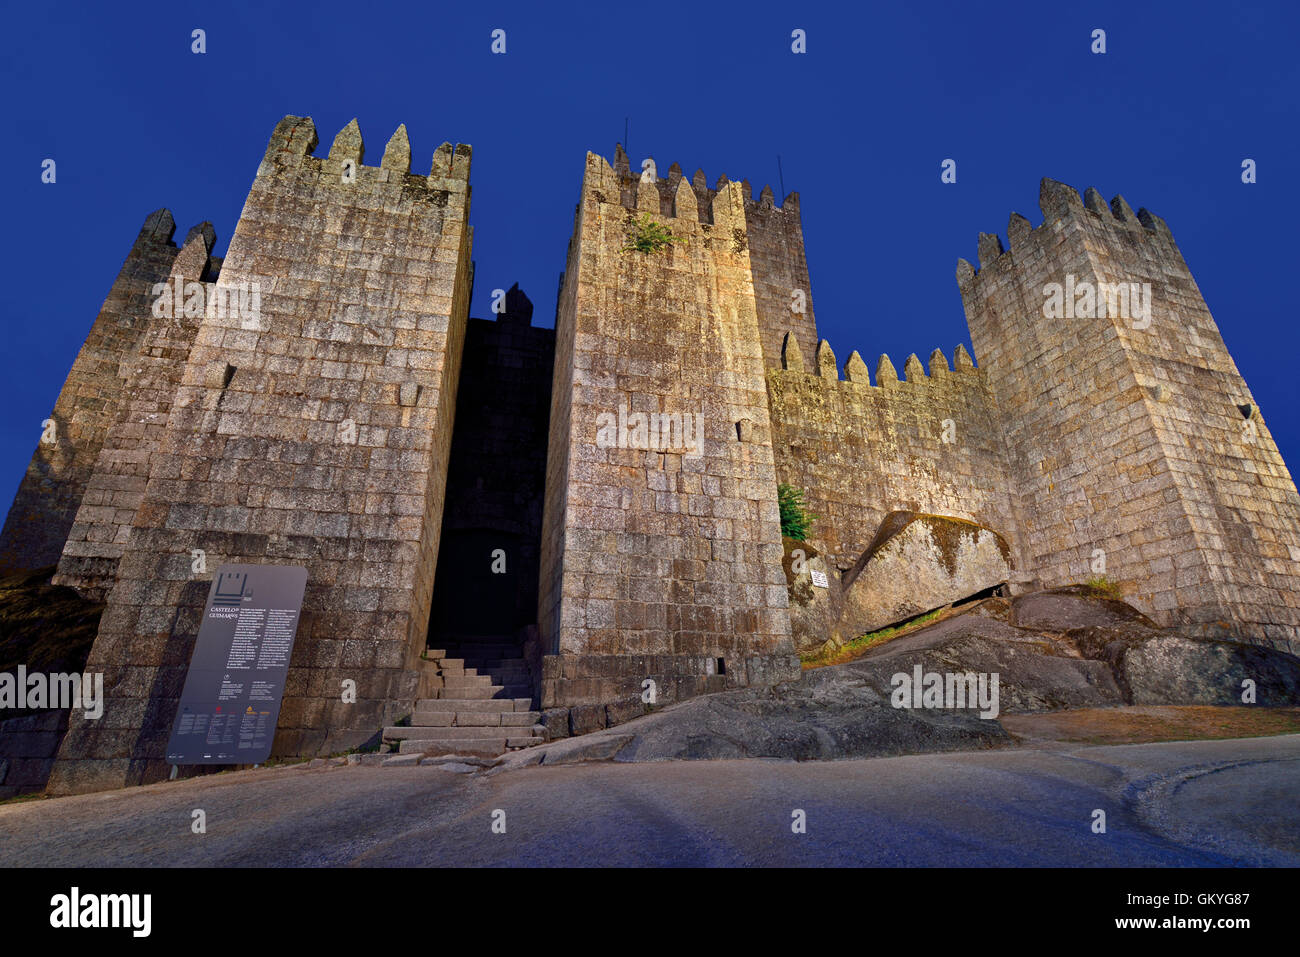 Portugal, Minho: Mittelalterliche Burg von Guimarães bei Nacht Stockfoto